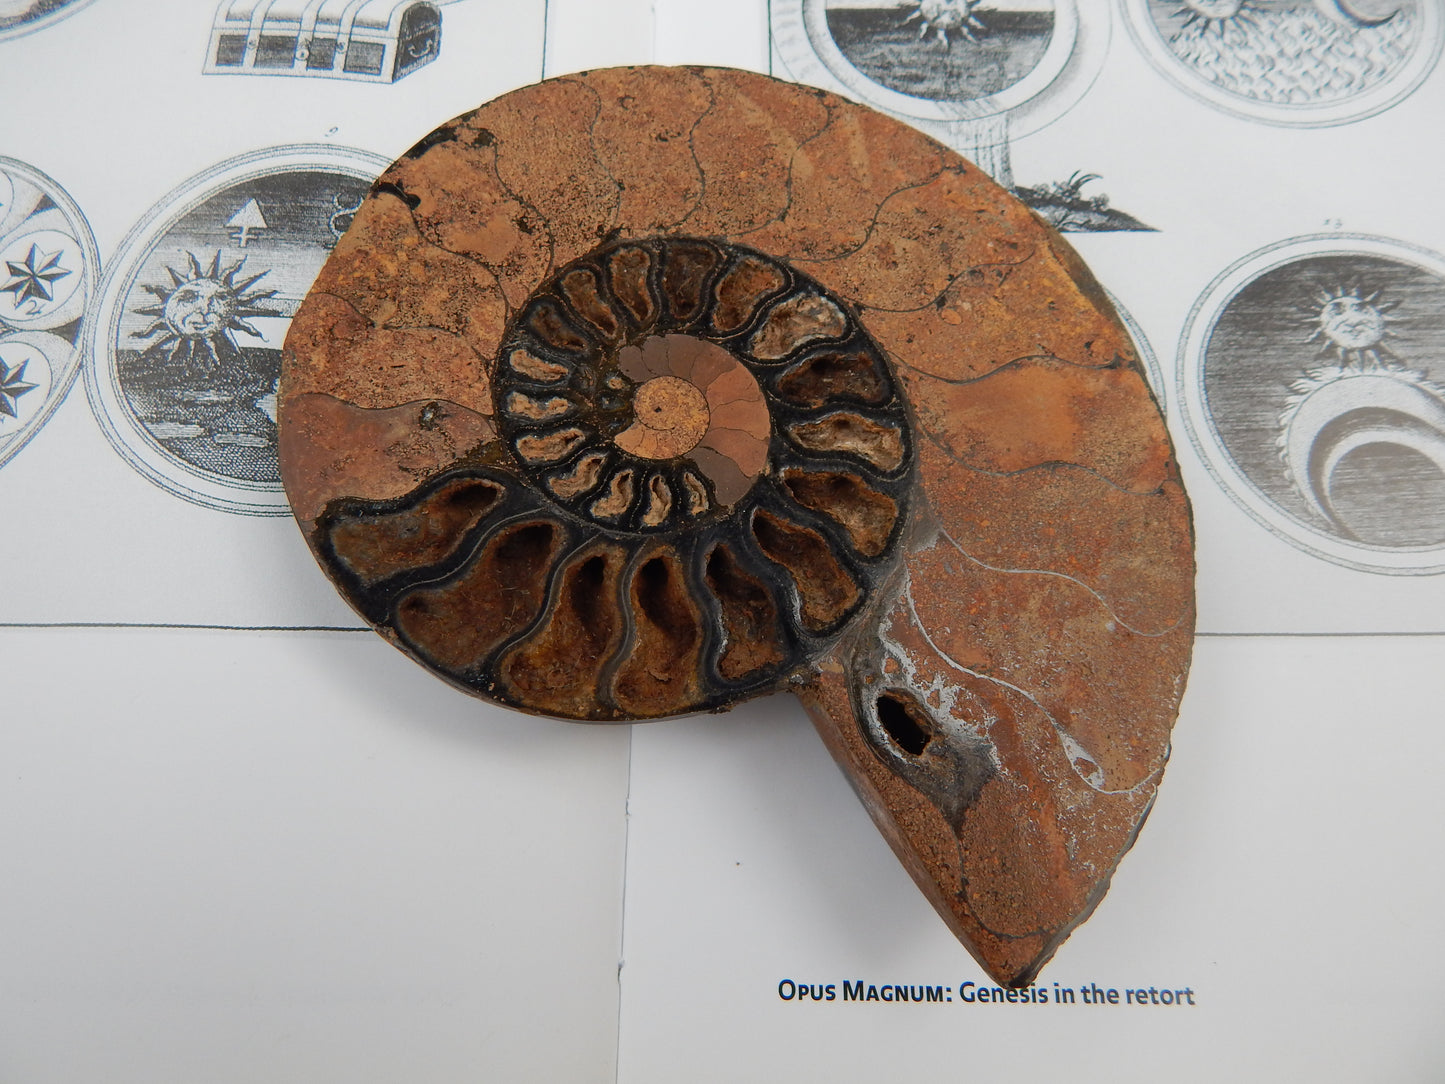 Cretaceous Period Ammonite Fossil Specimen